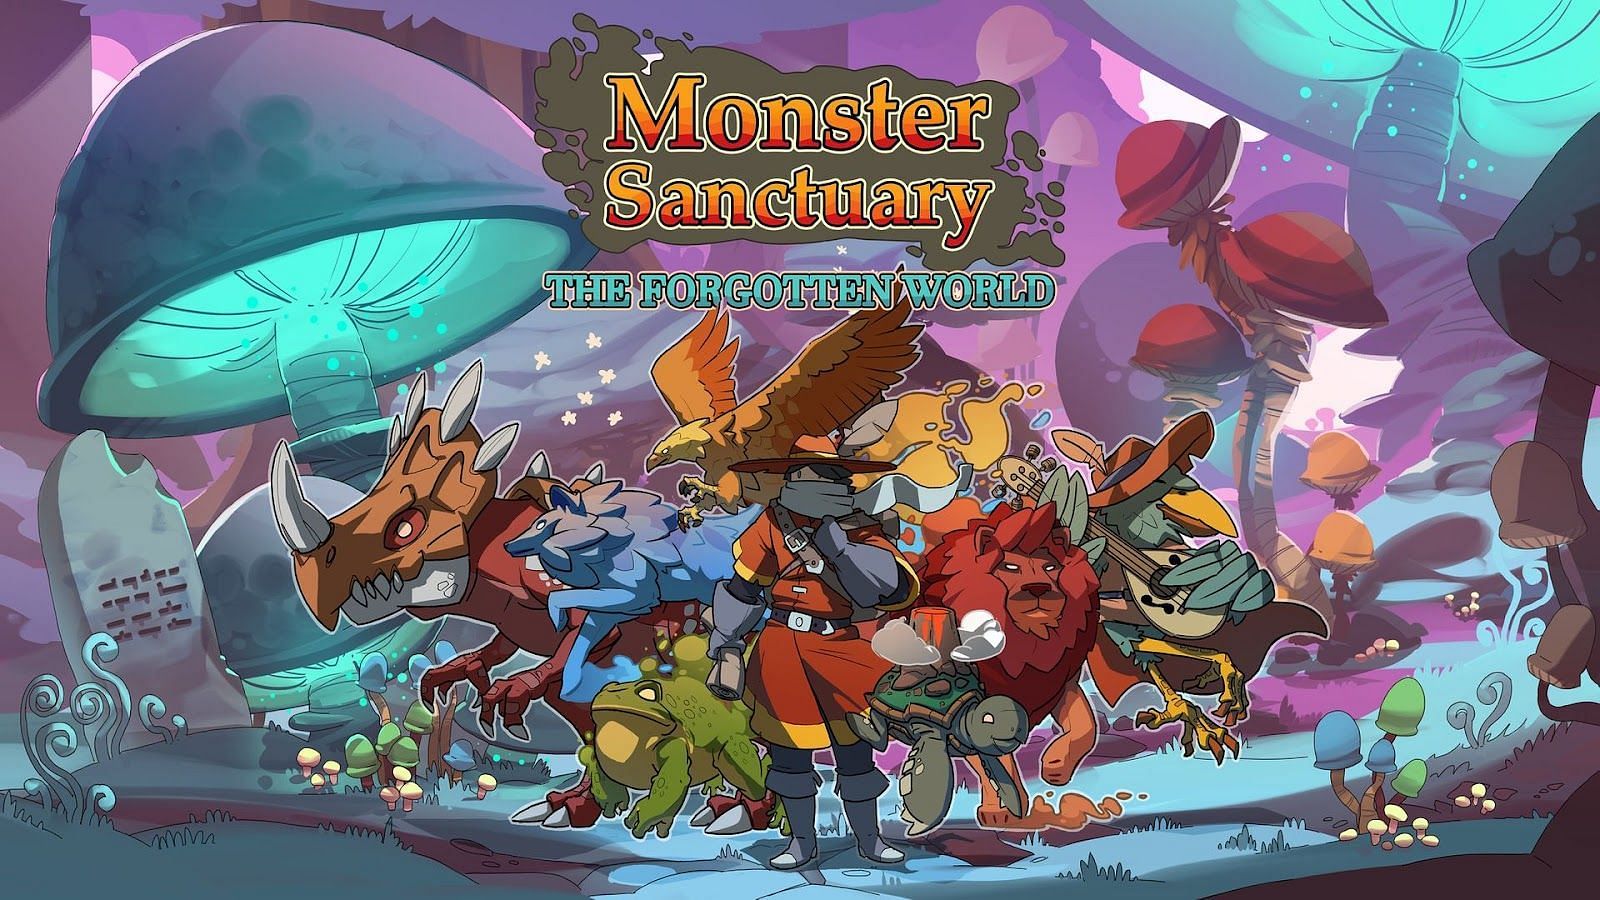 Monster Sanctuary post the Forgotten World release (Image via Team17)